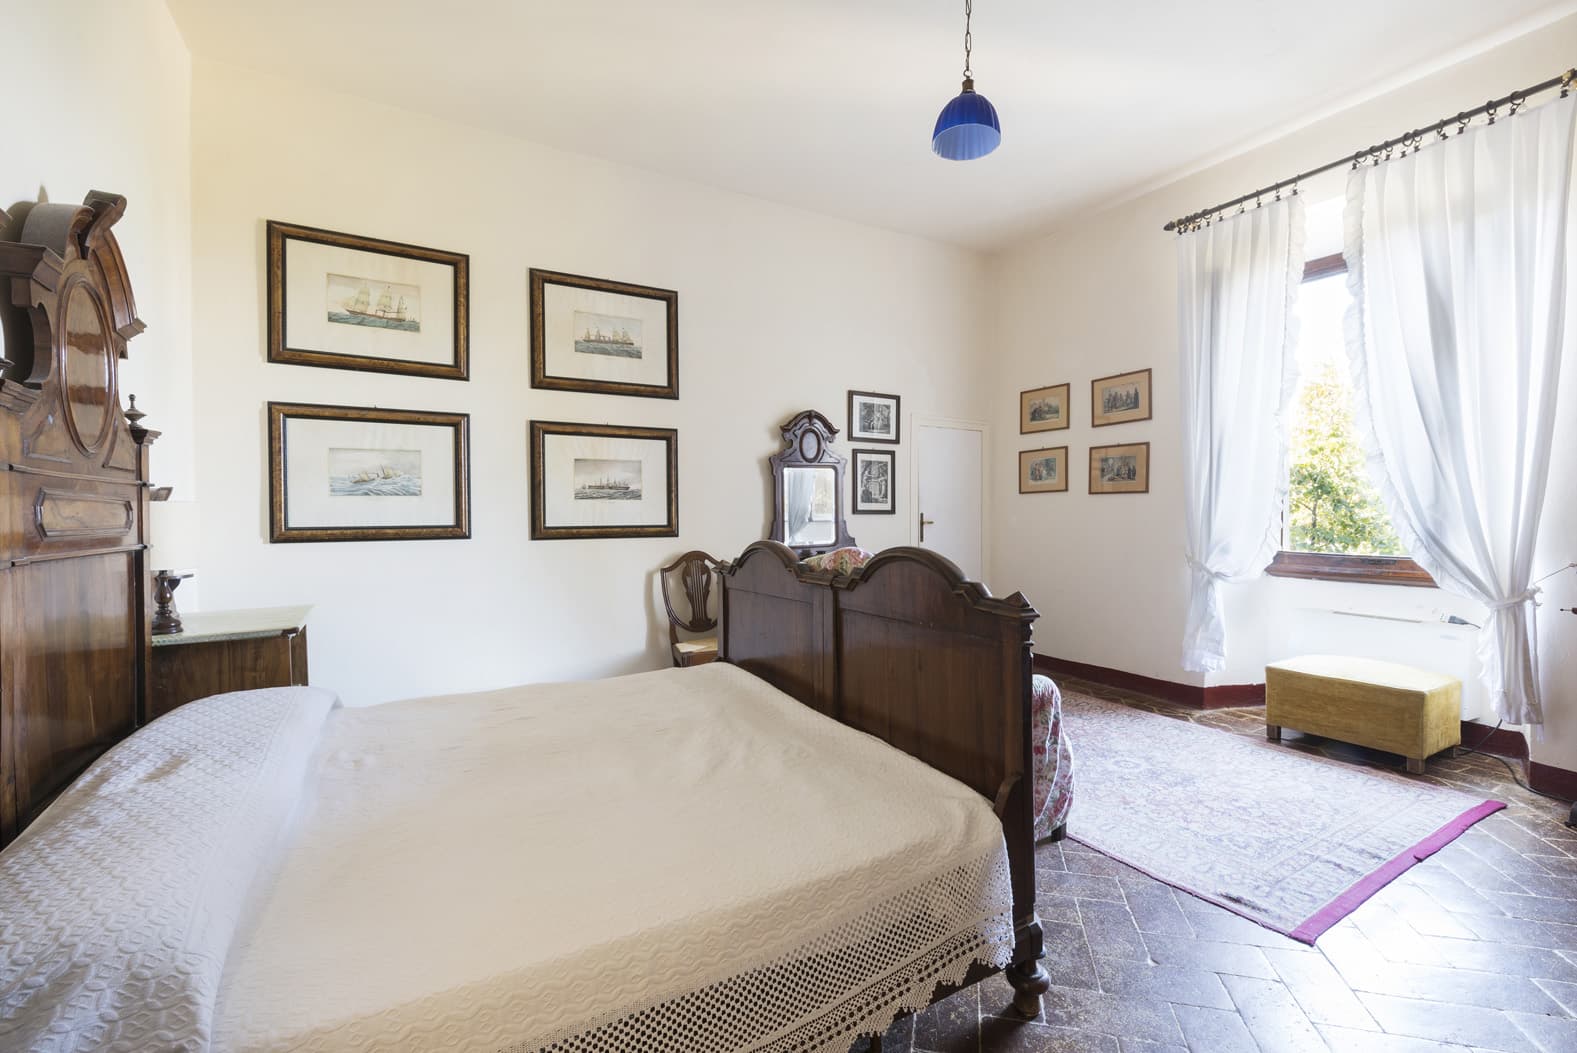  Bedroom Villa For Sale Borgo In Chianti Lp0793 1d6d81e4b7e02d00.jpg